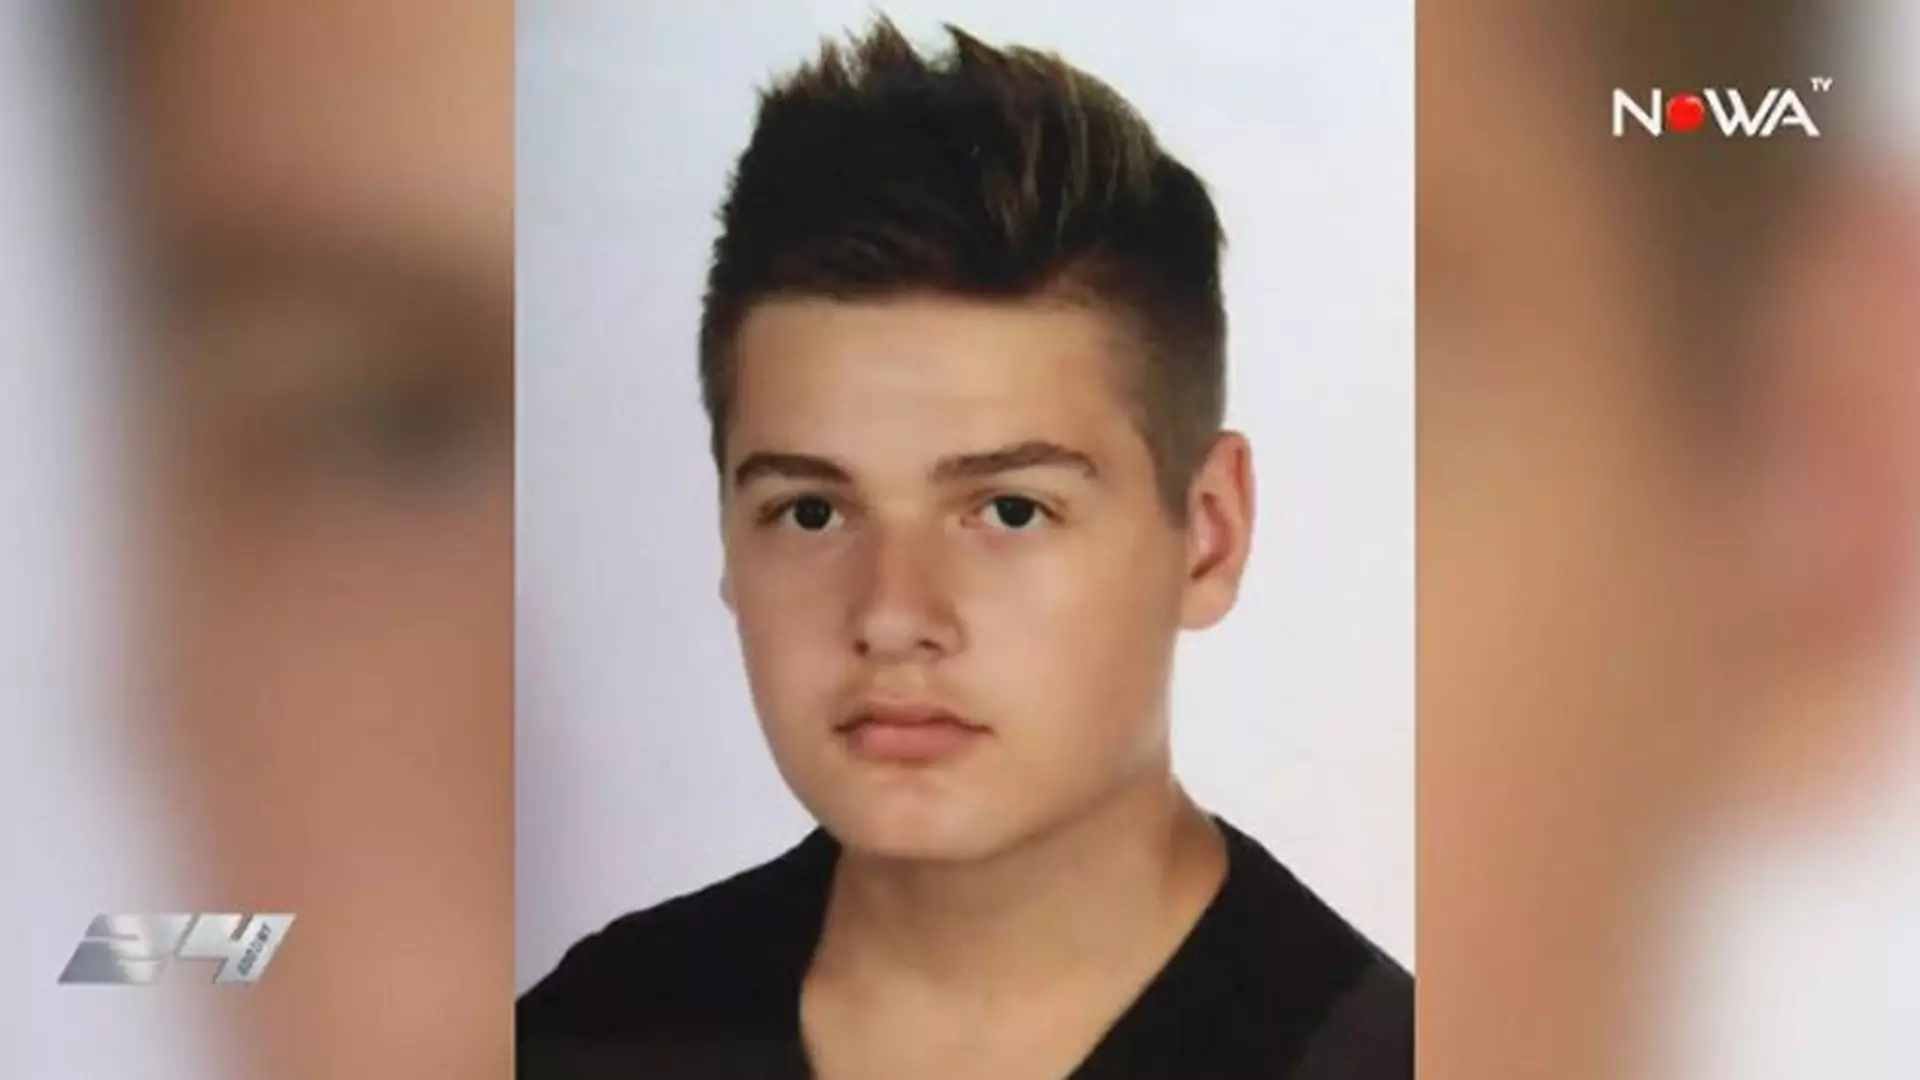 Zaszczuty 14-latek z Gorczyna odebrał sobie życie. Szykanowali go: "gej, inaczej się ubiera"